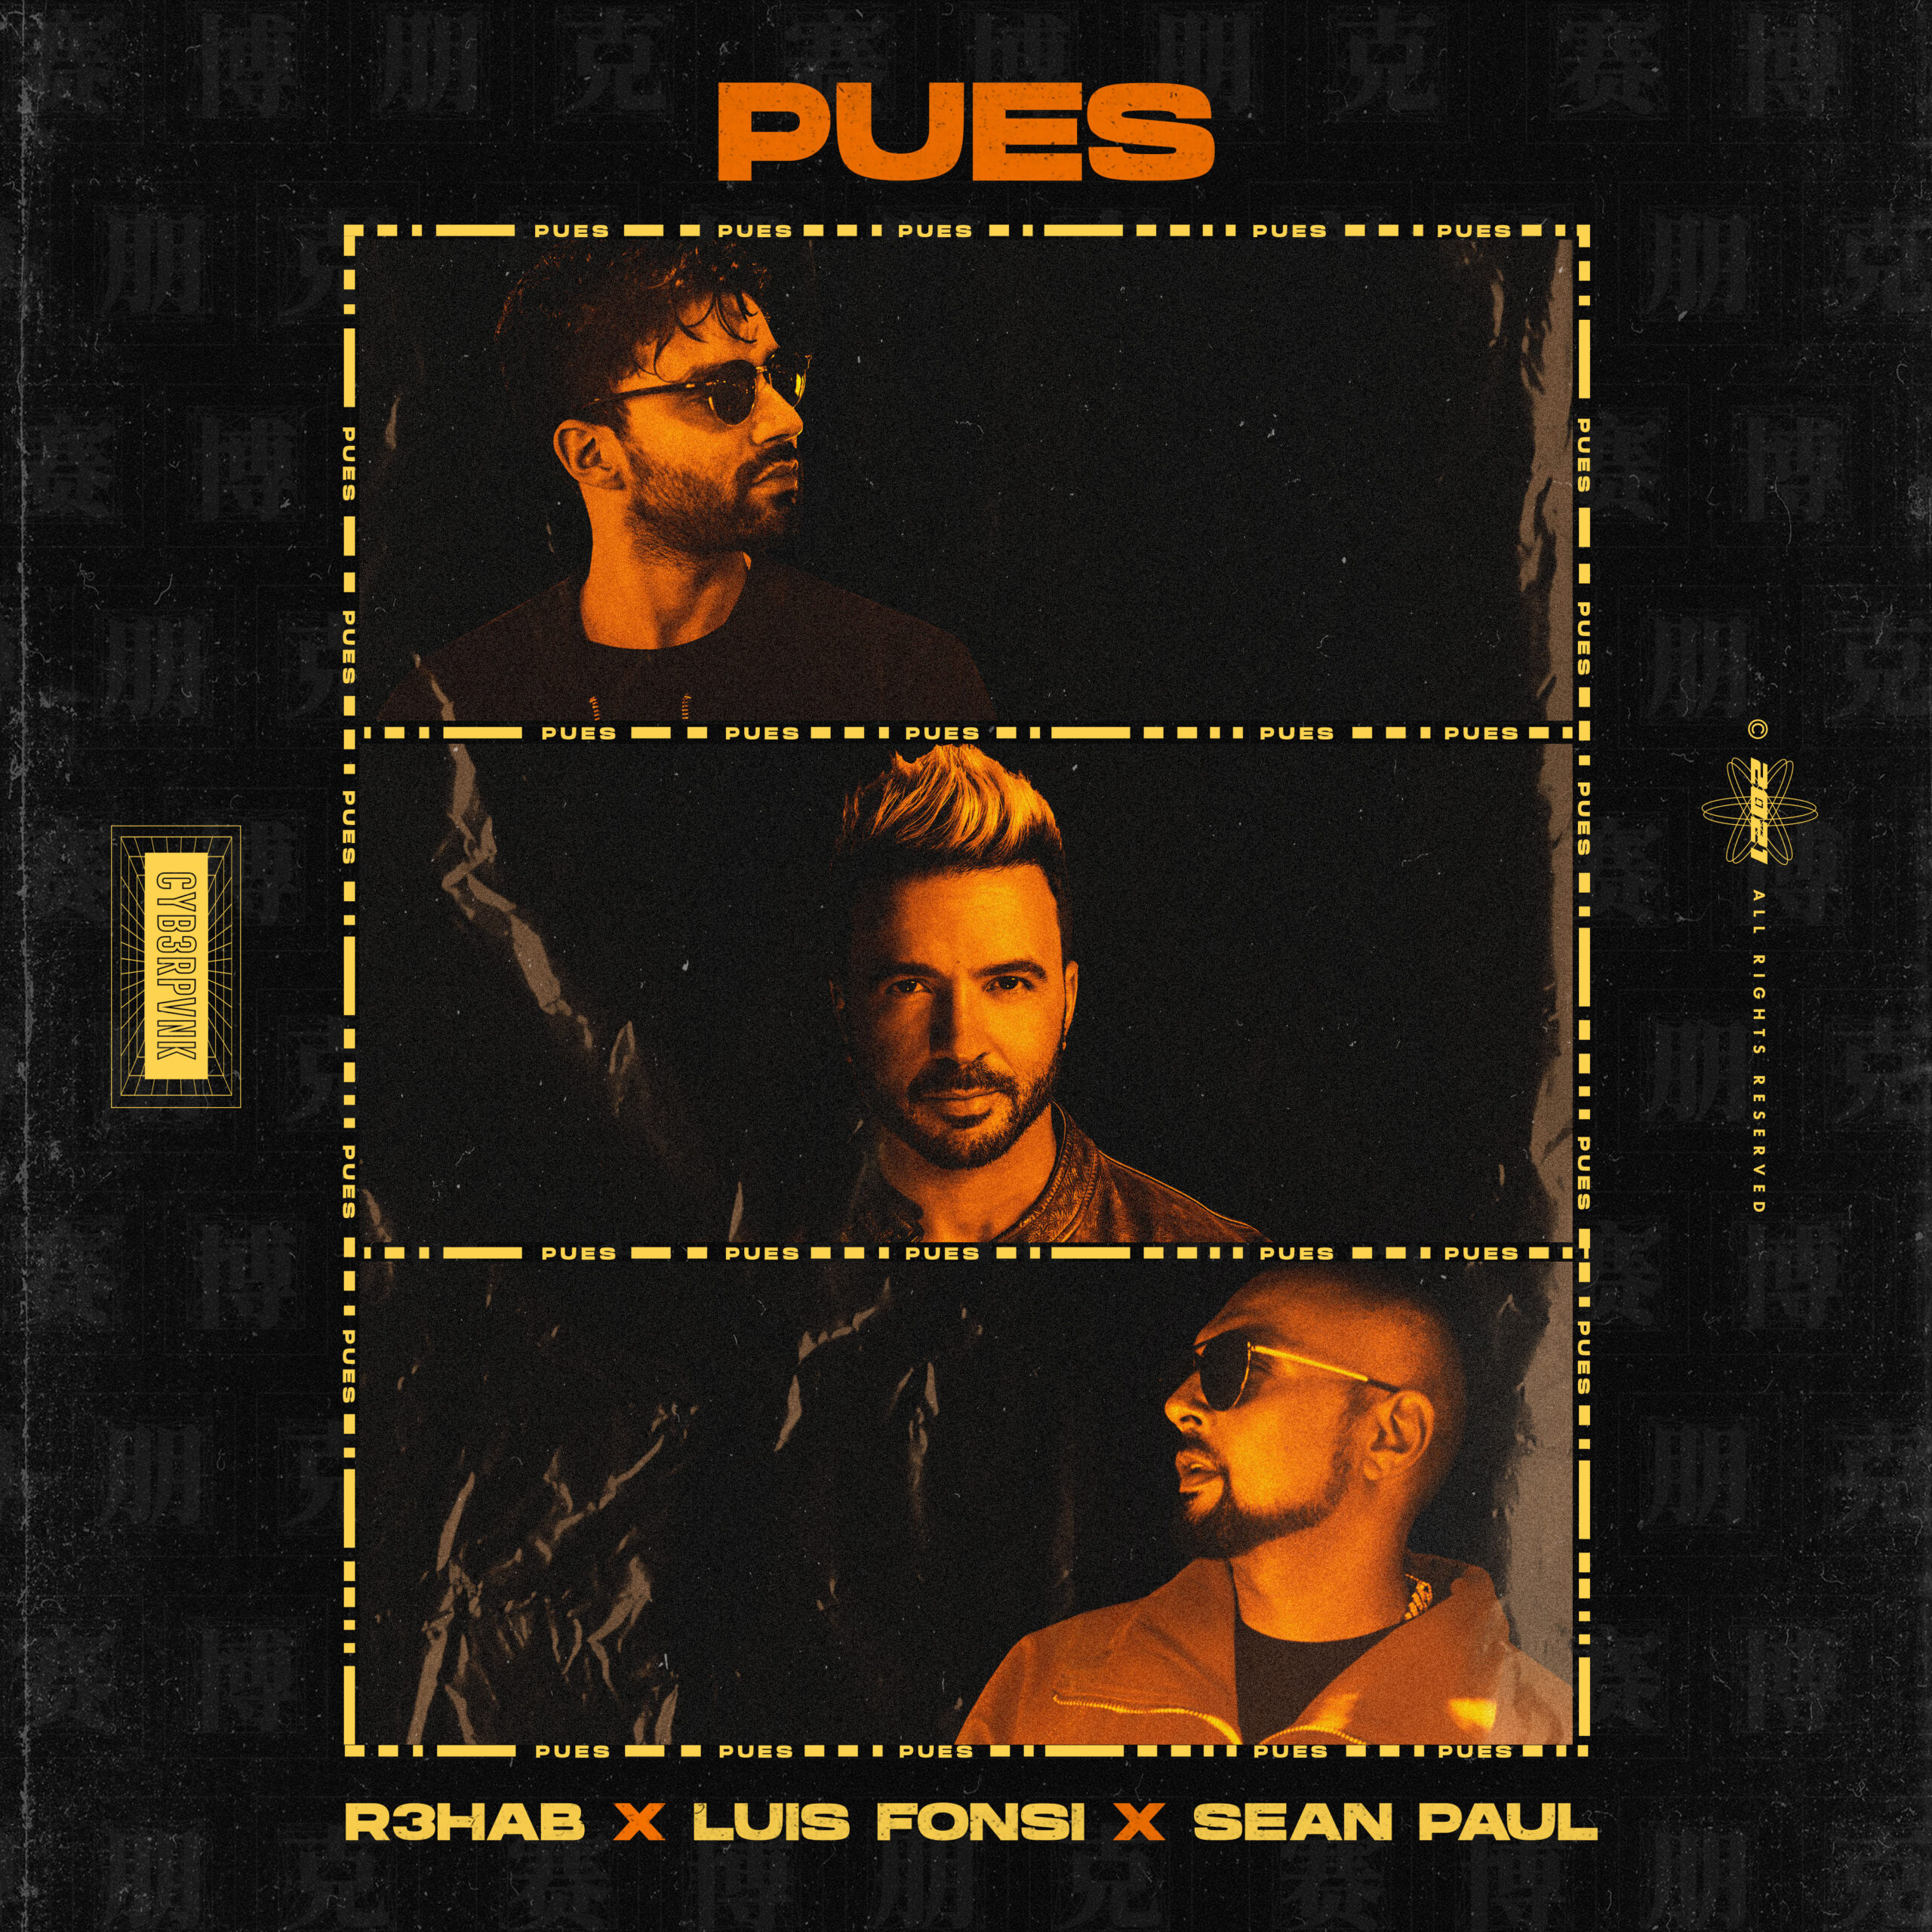 Ouça "Pues", nova track de R3HAB em colaboração com Luis Fonsi e Sean Paul